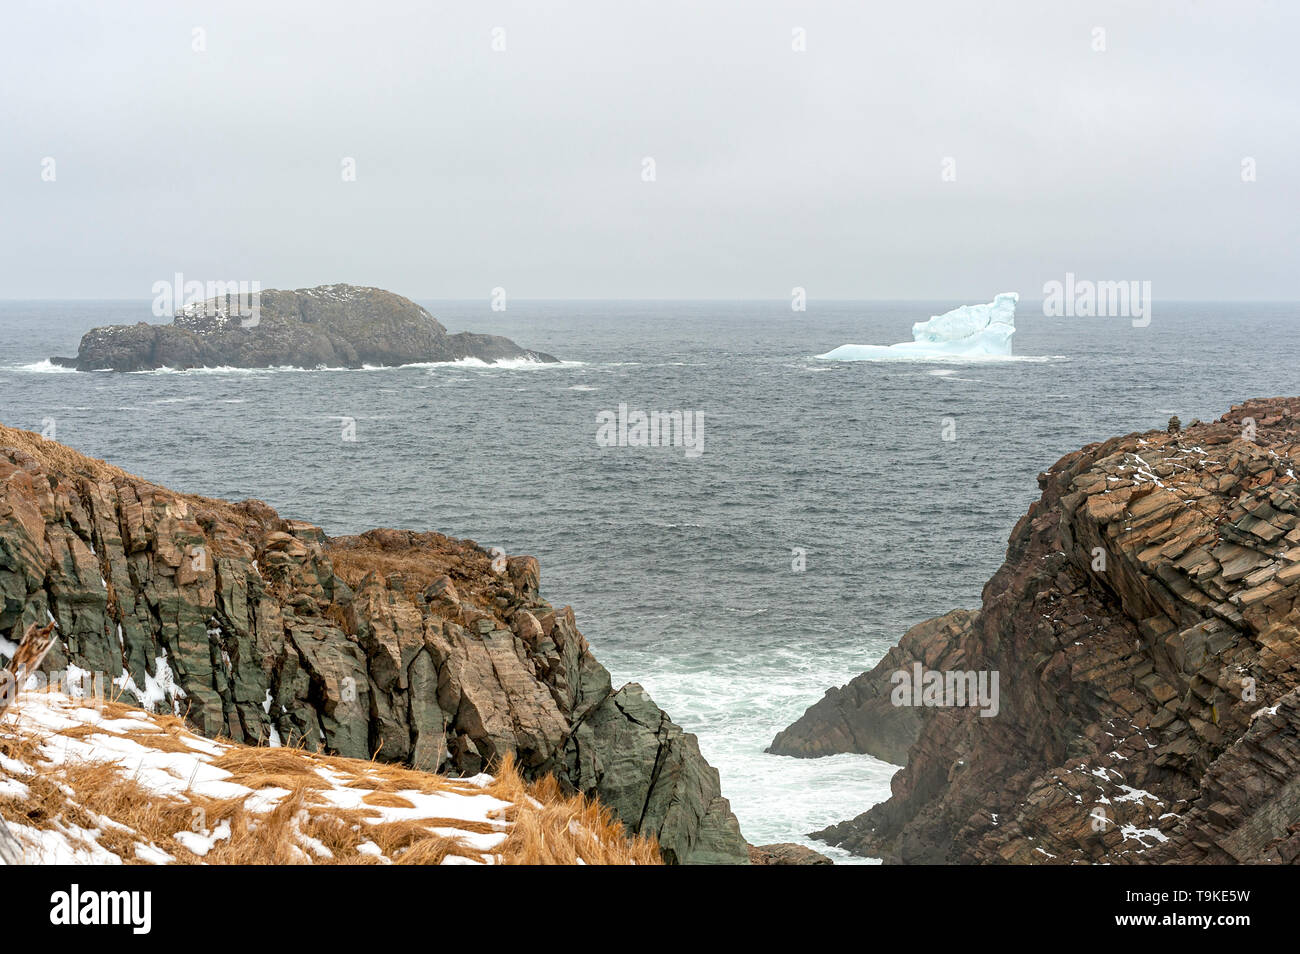 Un piccolo iceberg vicino a coste rocciose Foto Stock